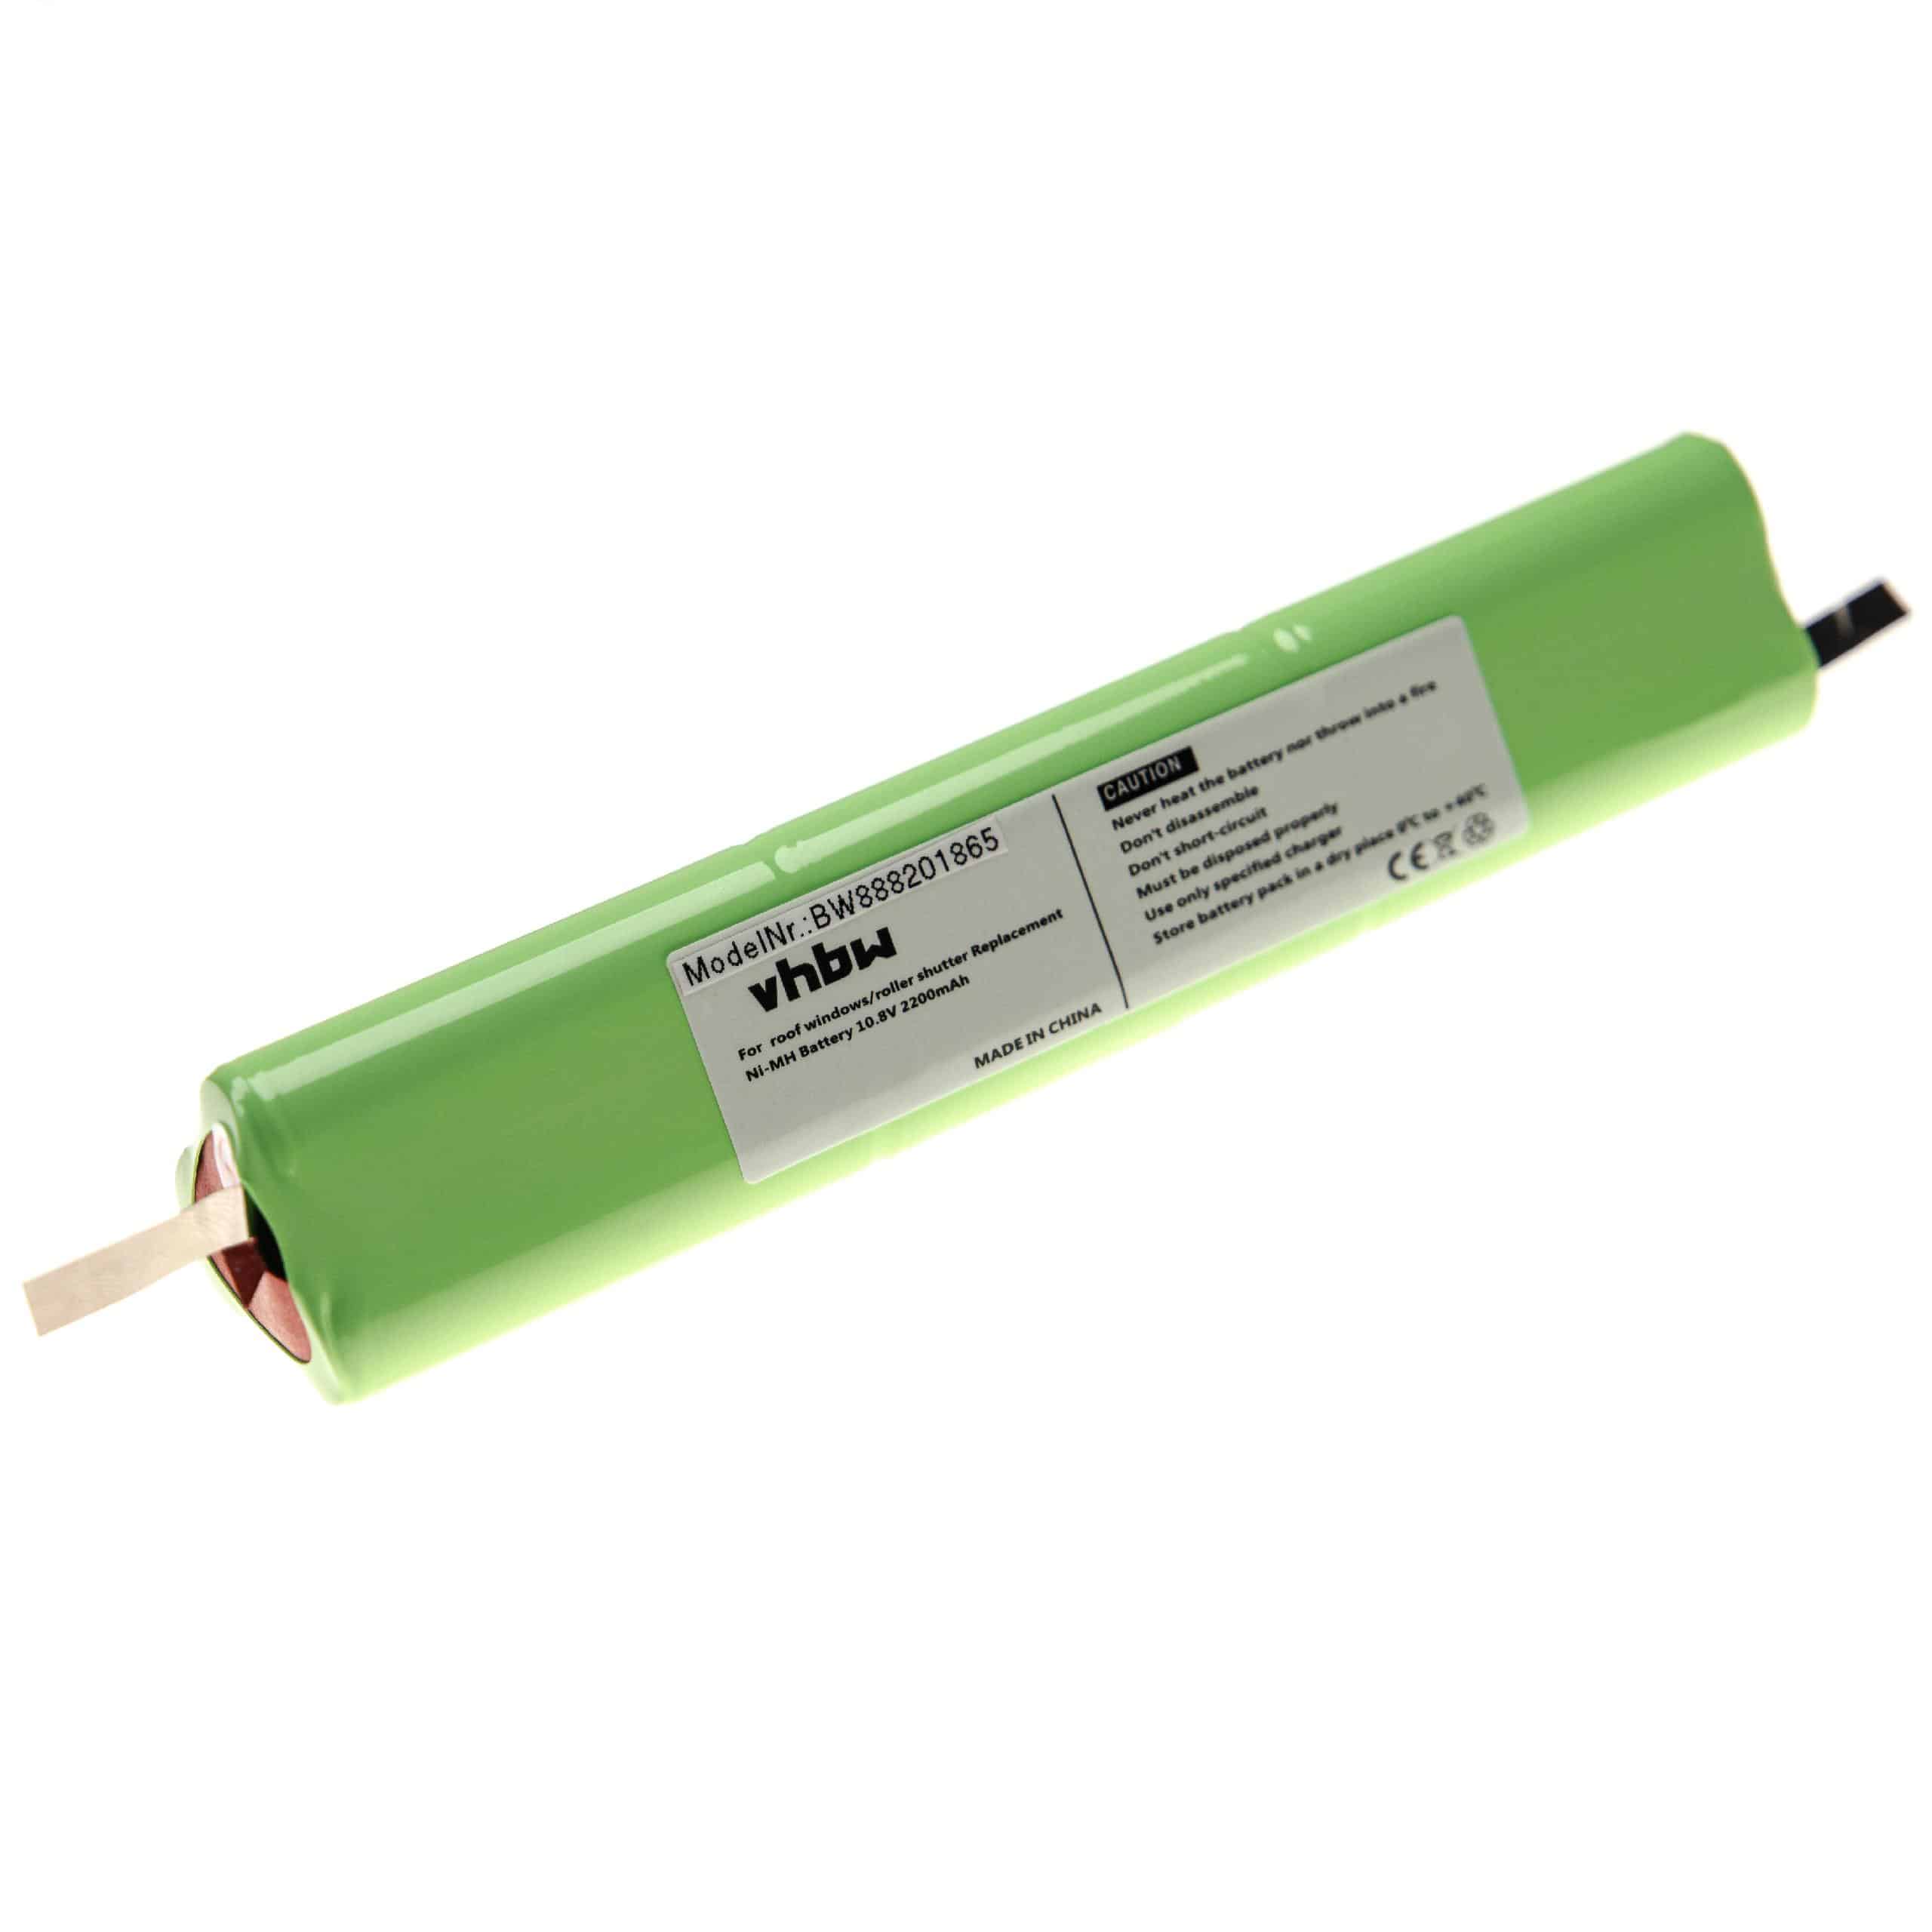 Akumulator do rolet / żaluzji dachowych zamiennik Velux 946933, 946930 - 2200 mAh 10,8 V NiMH